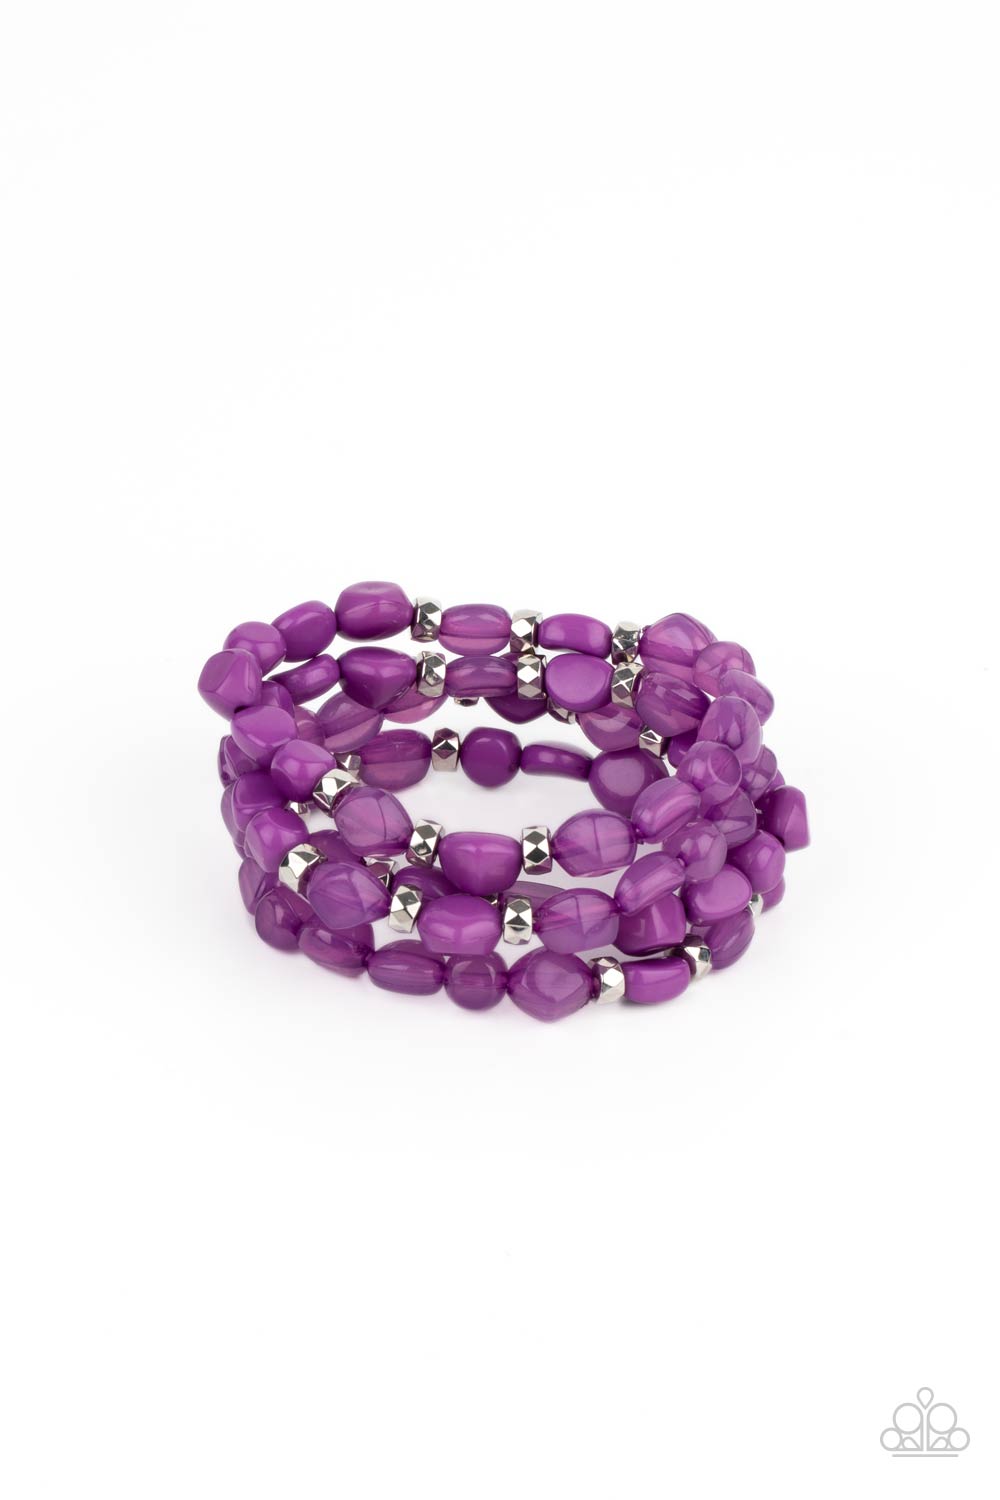 Bracelet - Nice GLOWING! - Purple